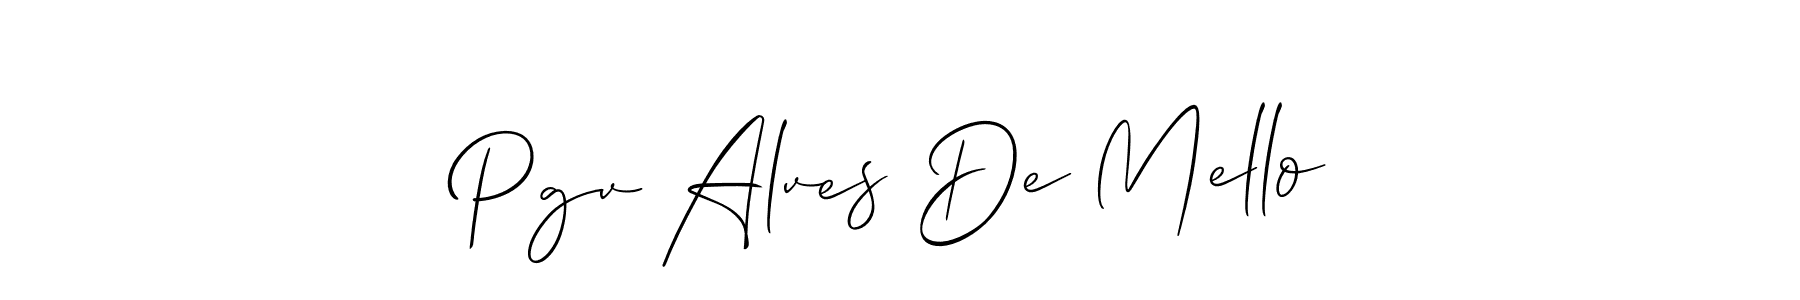 Check out images of Autograph of Pgv Alves De Mello name. Actor Pgv Alves De Mello Signature Style. Allison_Script is a professional sign style online. Pgv Alves De Mello signature style 2 images and pictures png